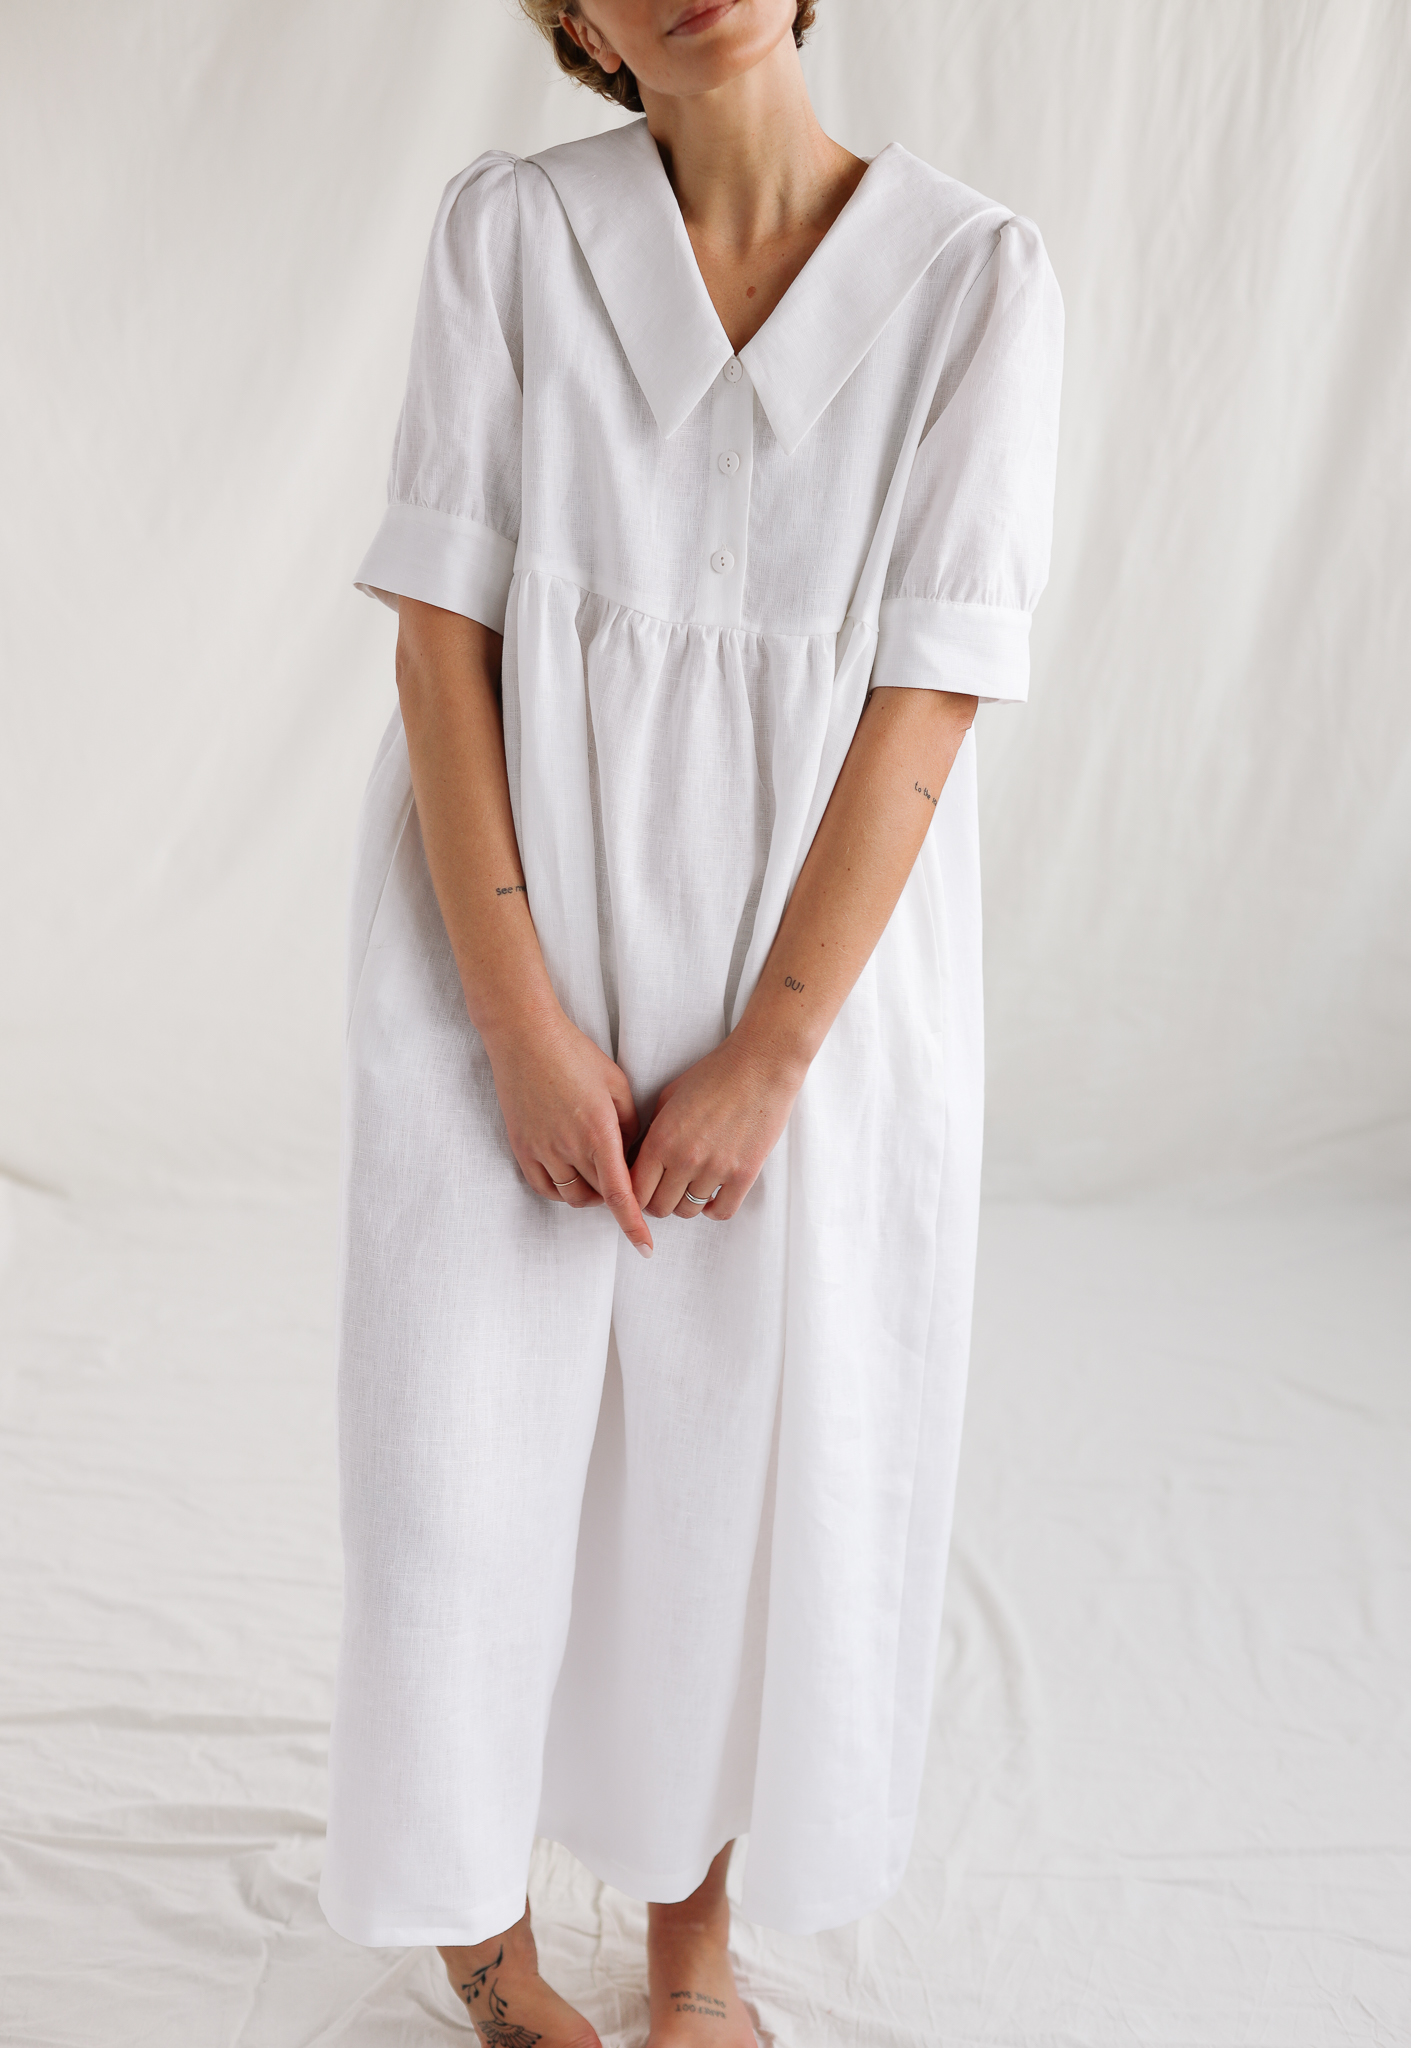 Adjustable straps summer linen dress ELOISE in ivory color – OffOn